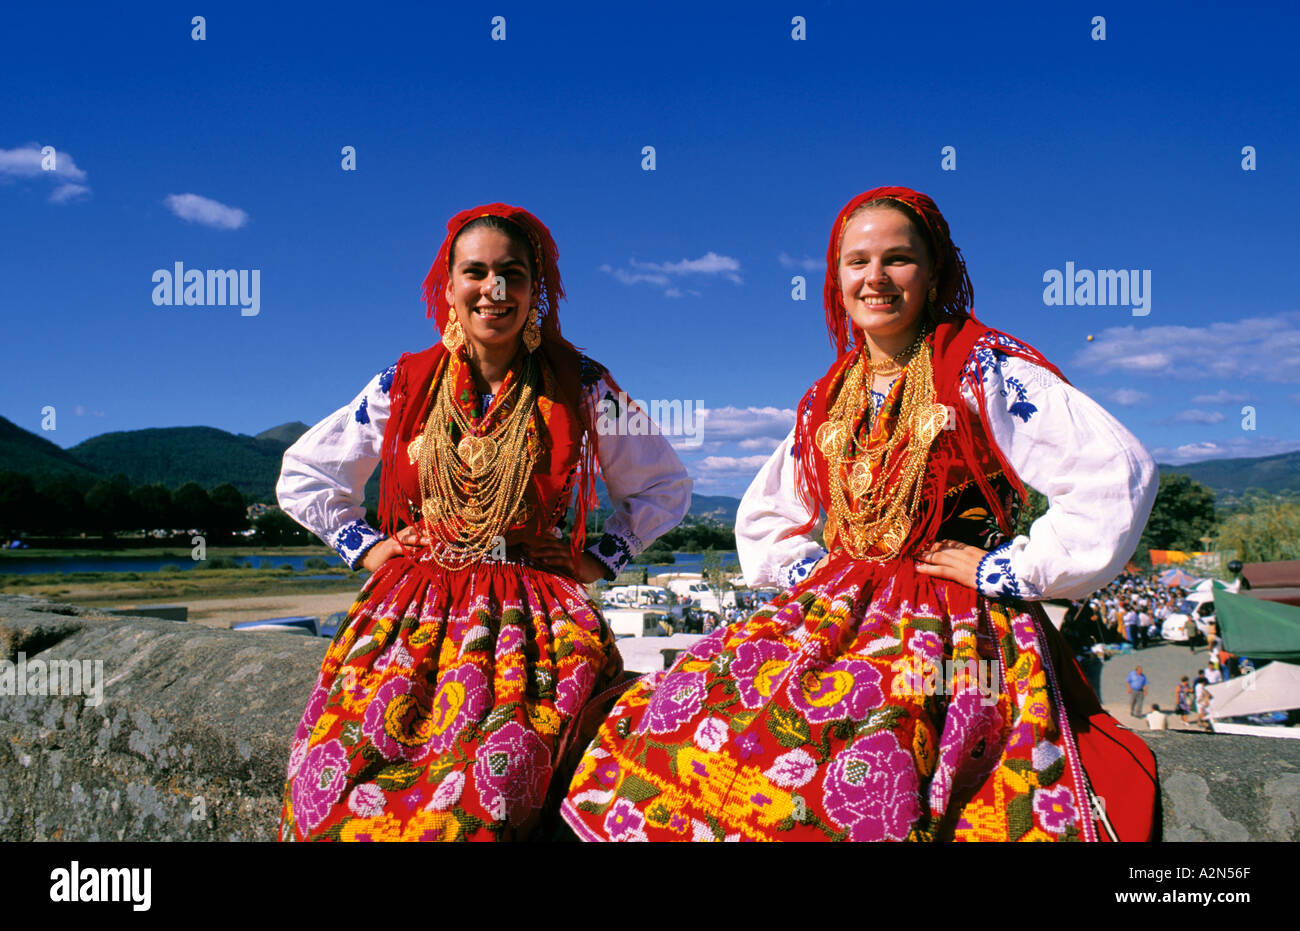 Girls with traditional costumes at the folklore festival Feiras Novas,  Ponte de Lima, Minho, Portugal Stock Photo